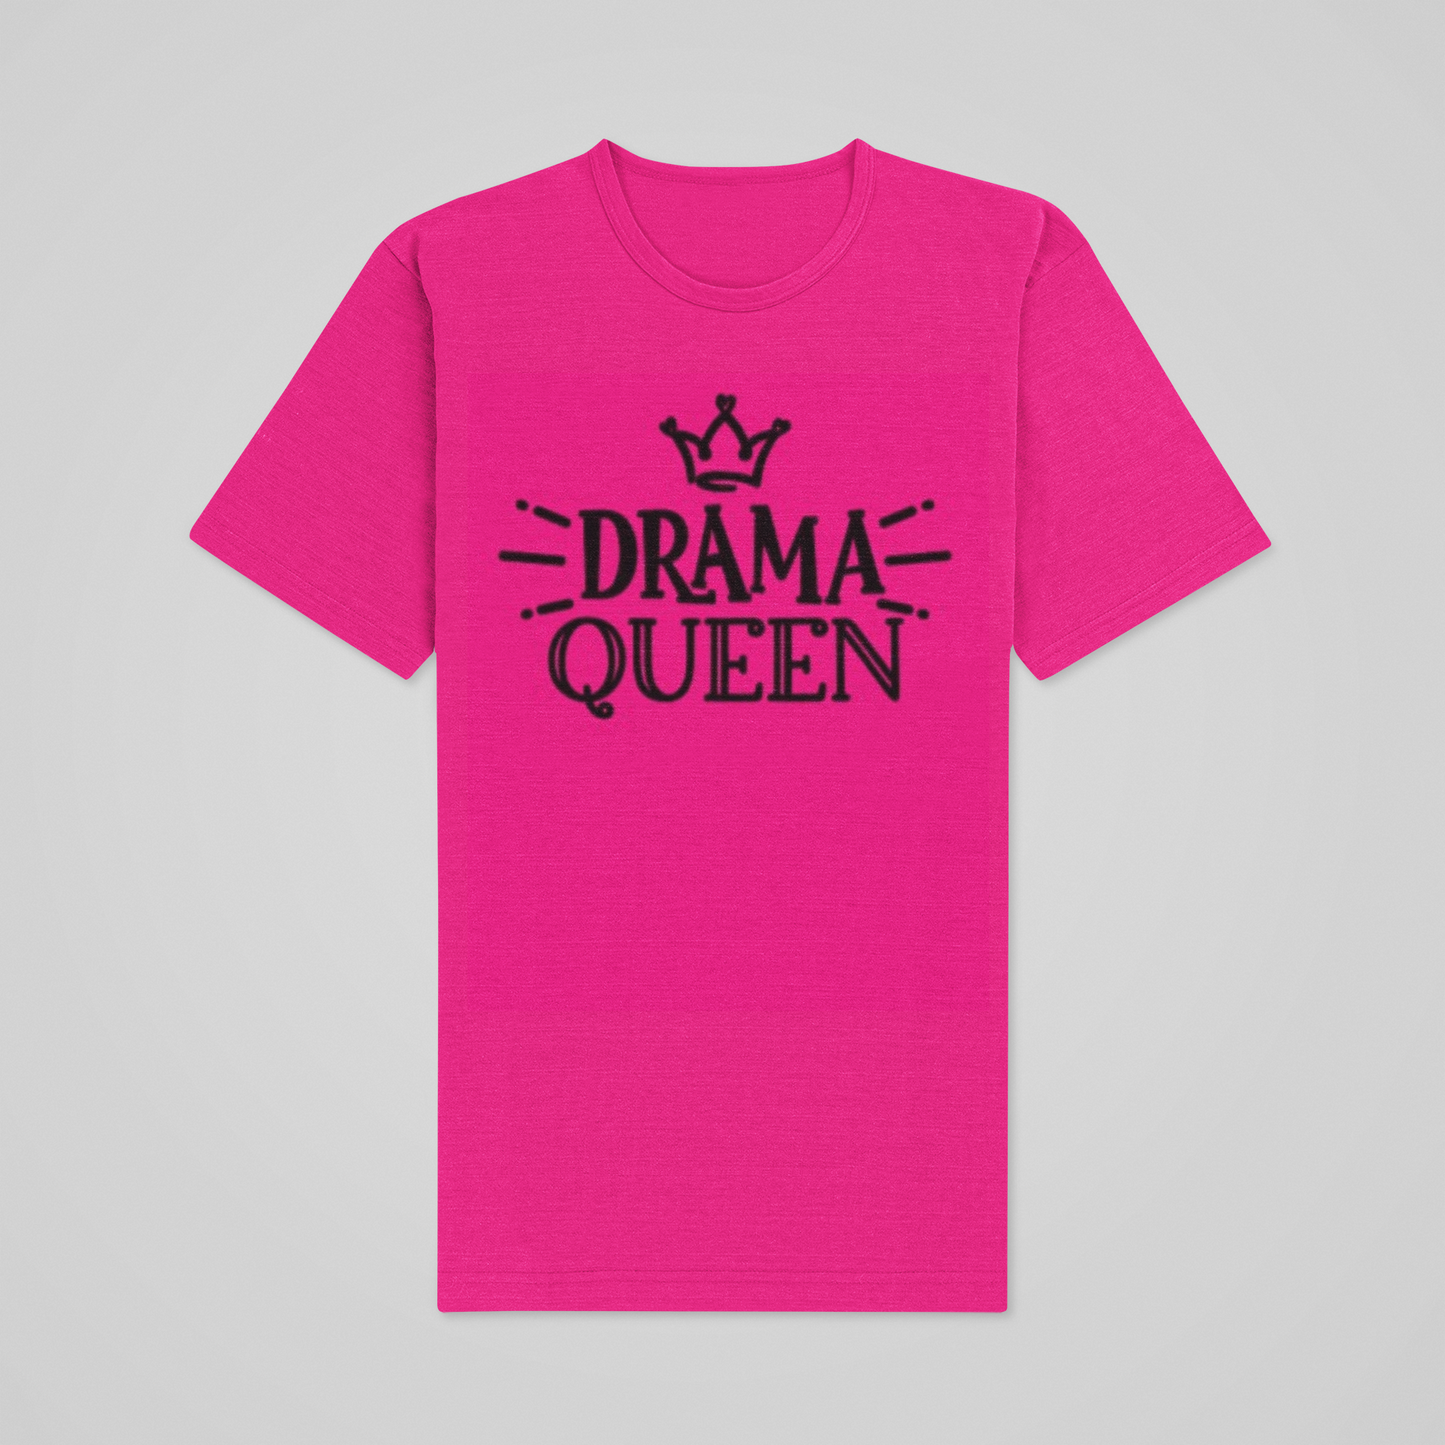 Drama Queen T-shirt set